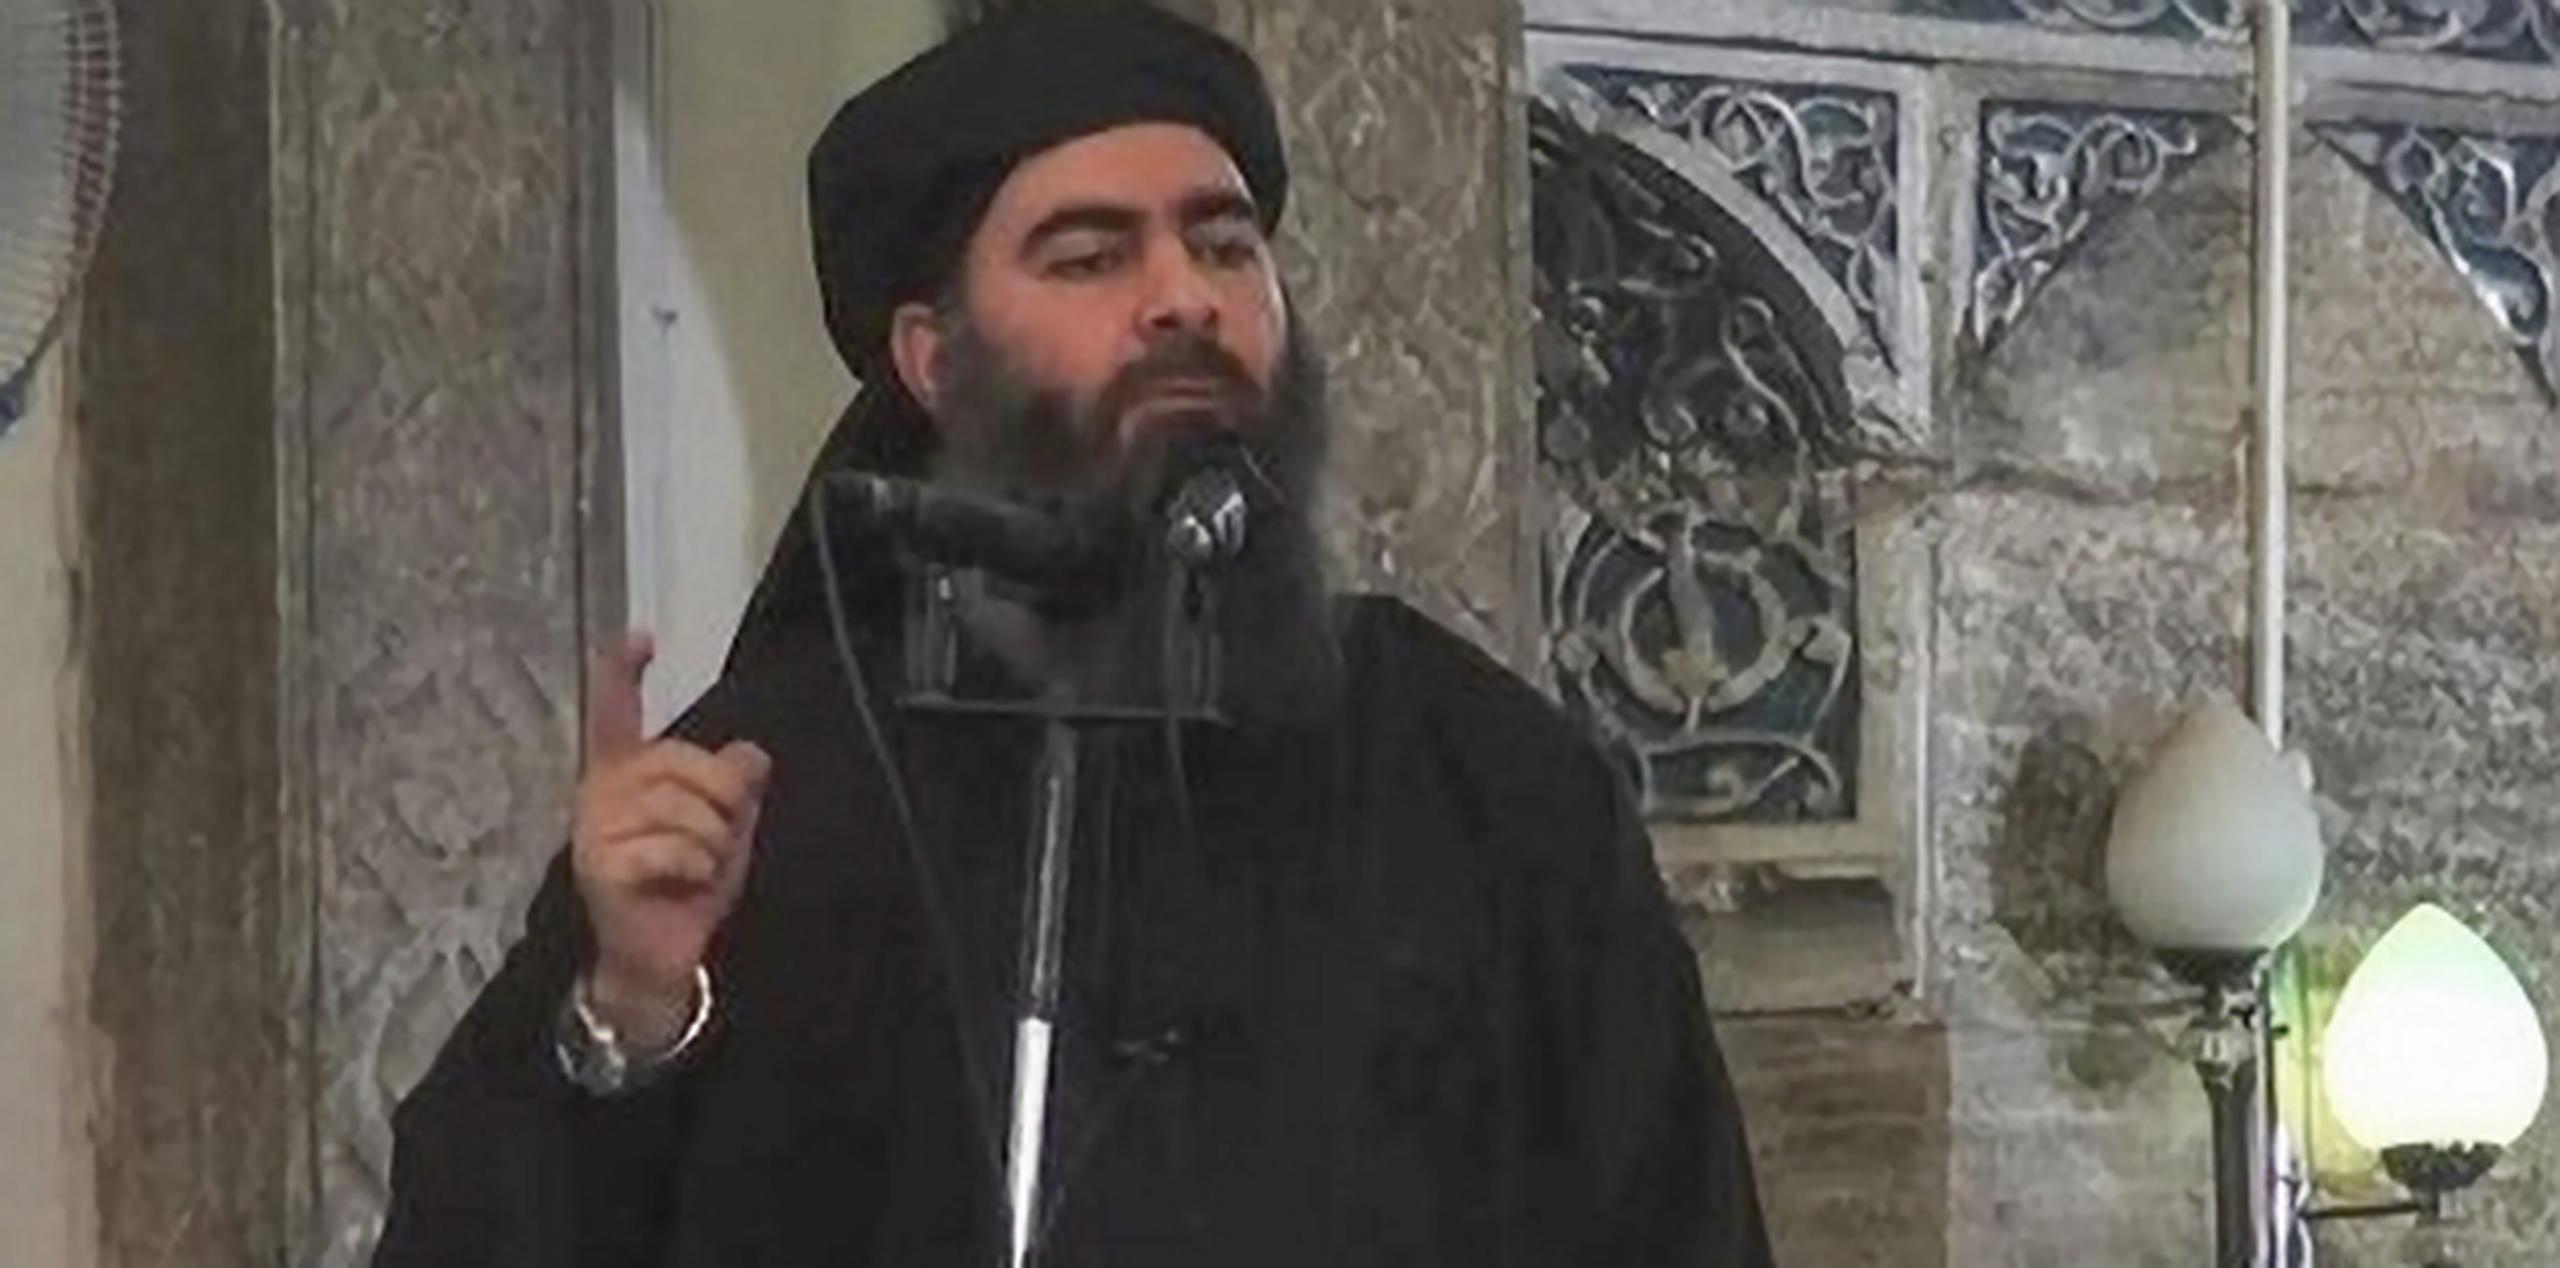 Abu Bakr al-Baghdadi se había autoproclamado líder del califato islámico establecido por el Estado Islámico en partes de Siria e Irak. (Archivo)